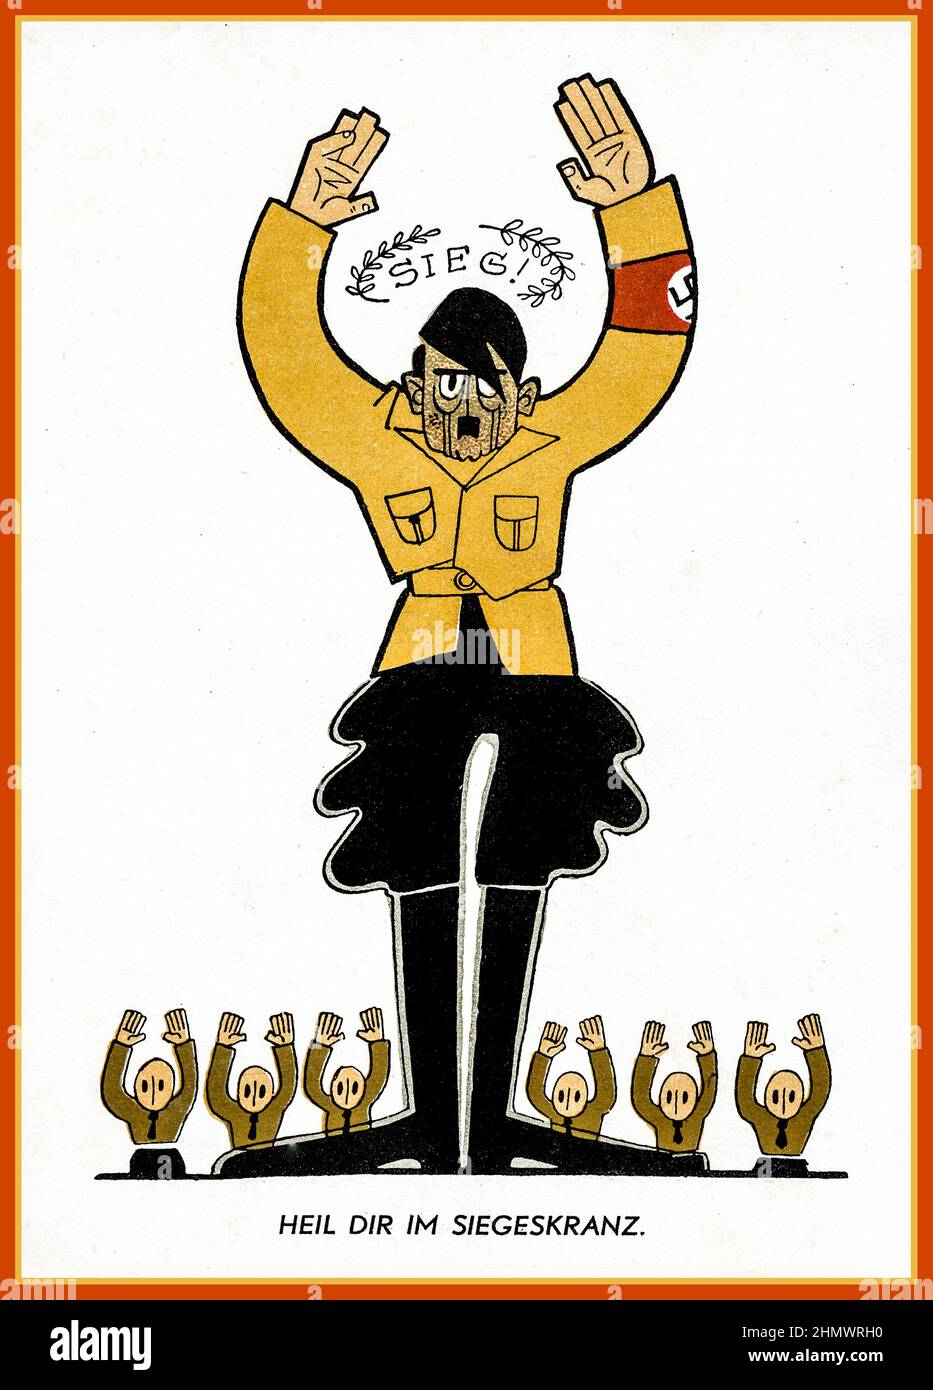 Vintage 1930s anti-nazi propaganda caricatura de dibujos animados Adolf Hitler en Sturmabteilung uniforme con el título 'SIEG' 'Victoria' Heil dir im siegeskranz, 'Ave a ti en la corona de la victoria' Adolf Hitler y sus colegas tienen sus manos en la rendición Foto de stock